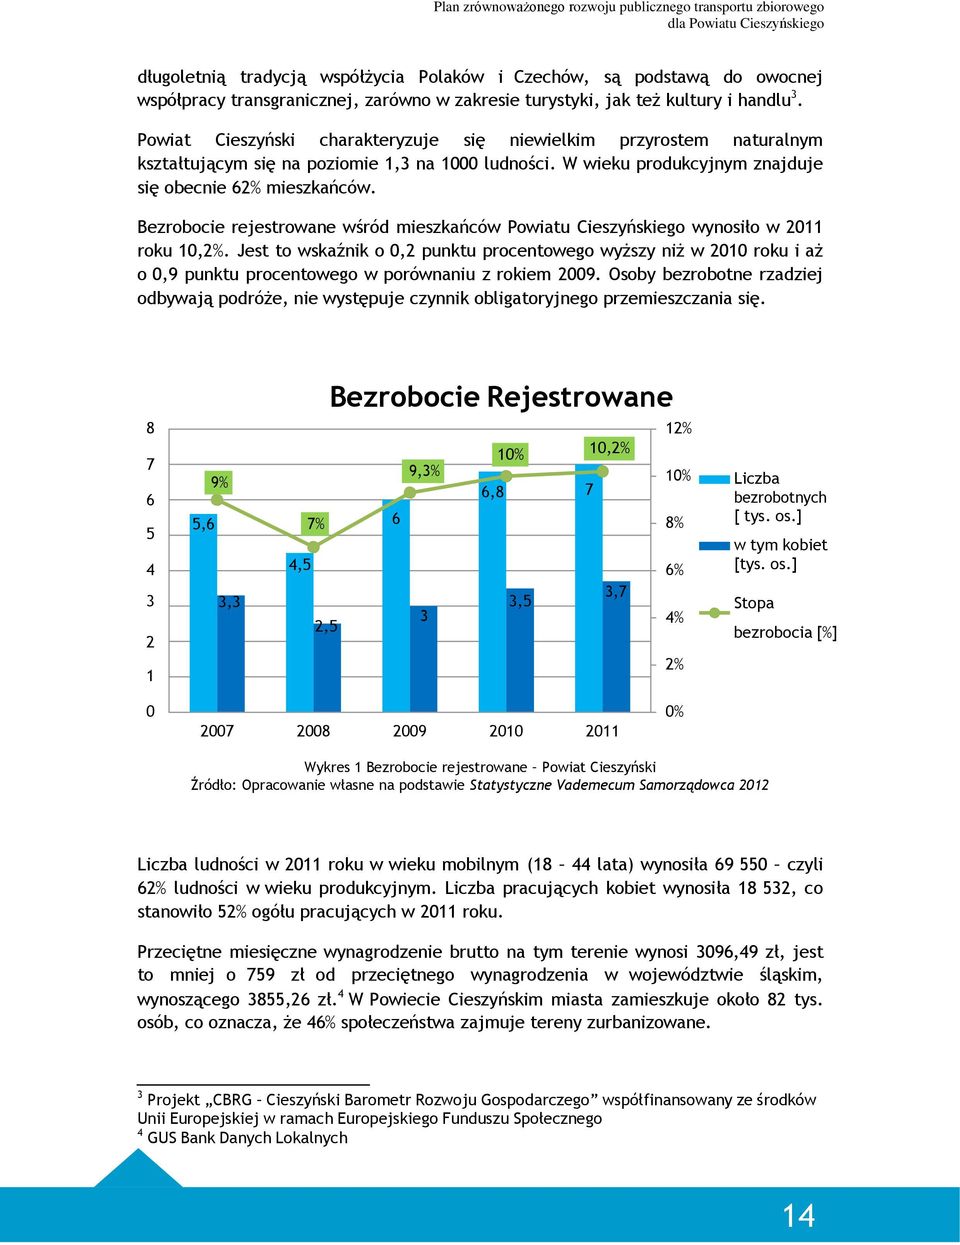 Bezrobocie rejestrowane wśród mieszkańców Powiatu Cieszyńskiego wynosiło w 2011 roku 10,2%.